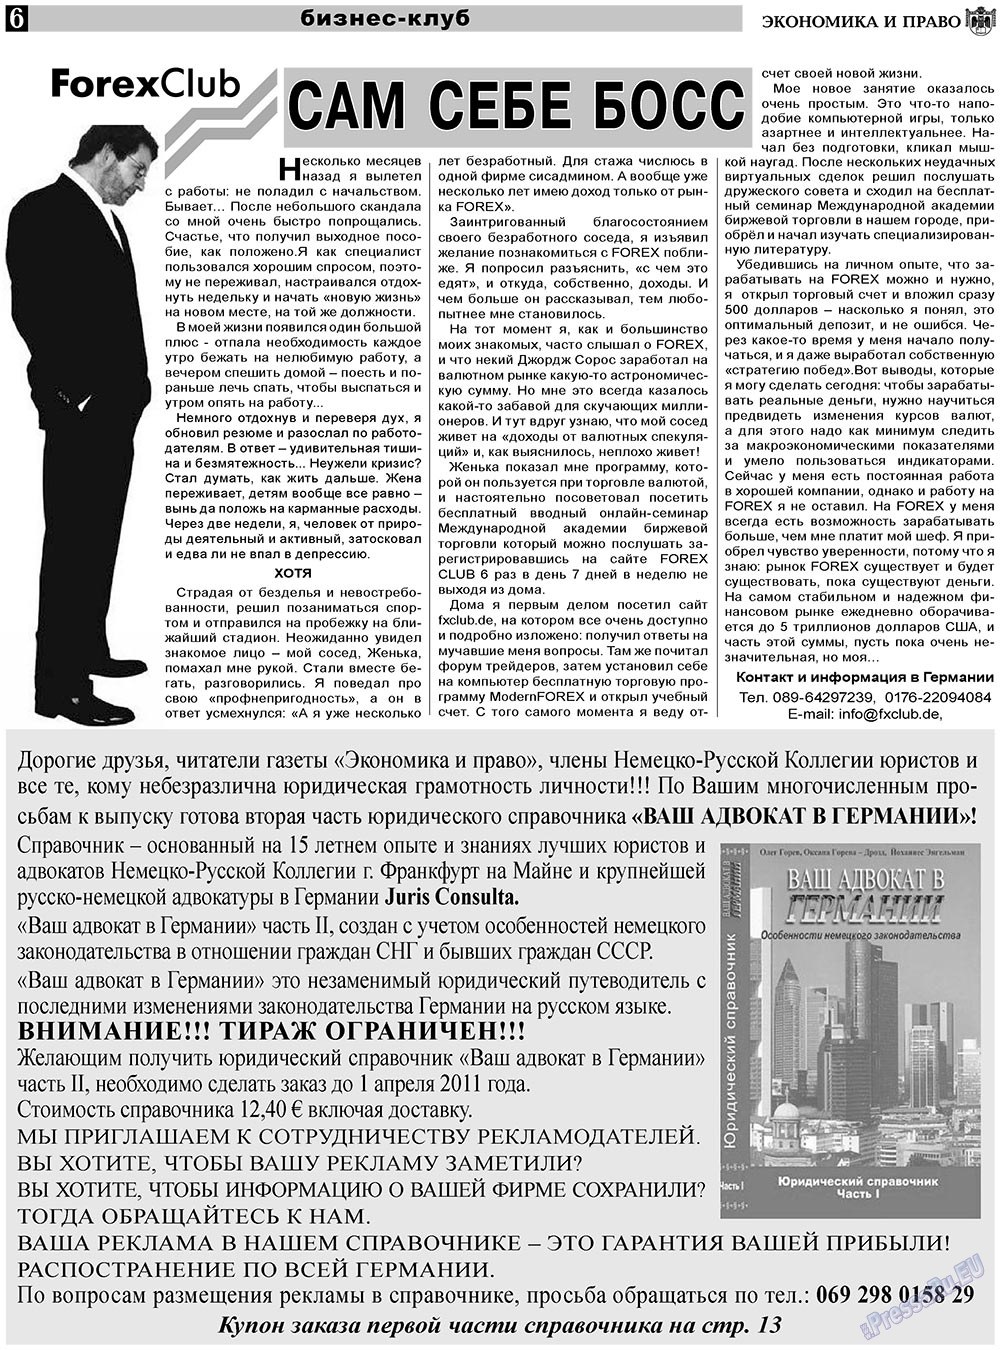 Экономика и право, газета. 2011 №2 стр.6